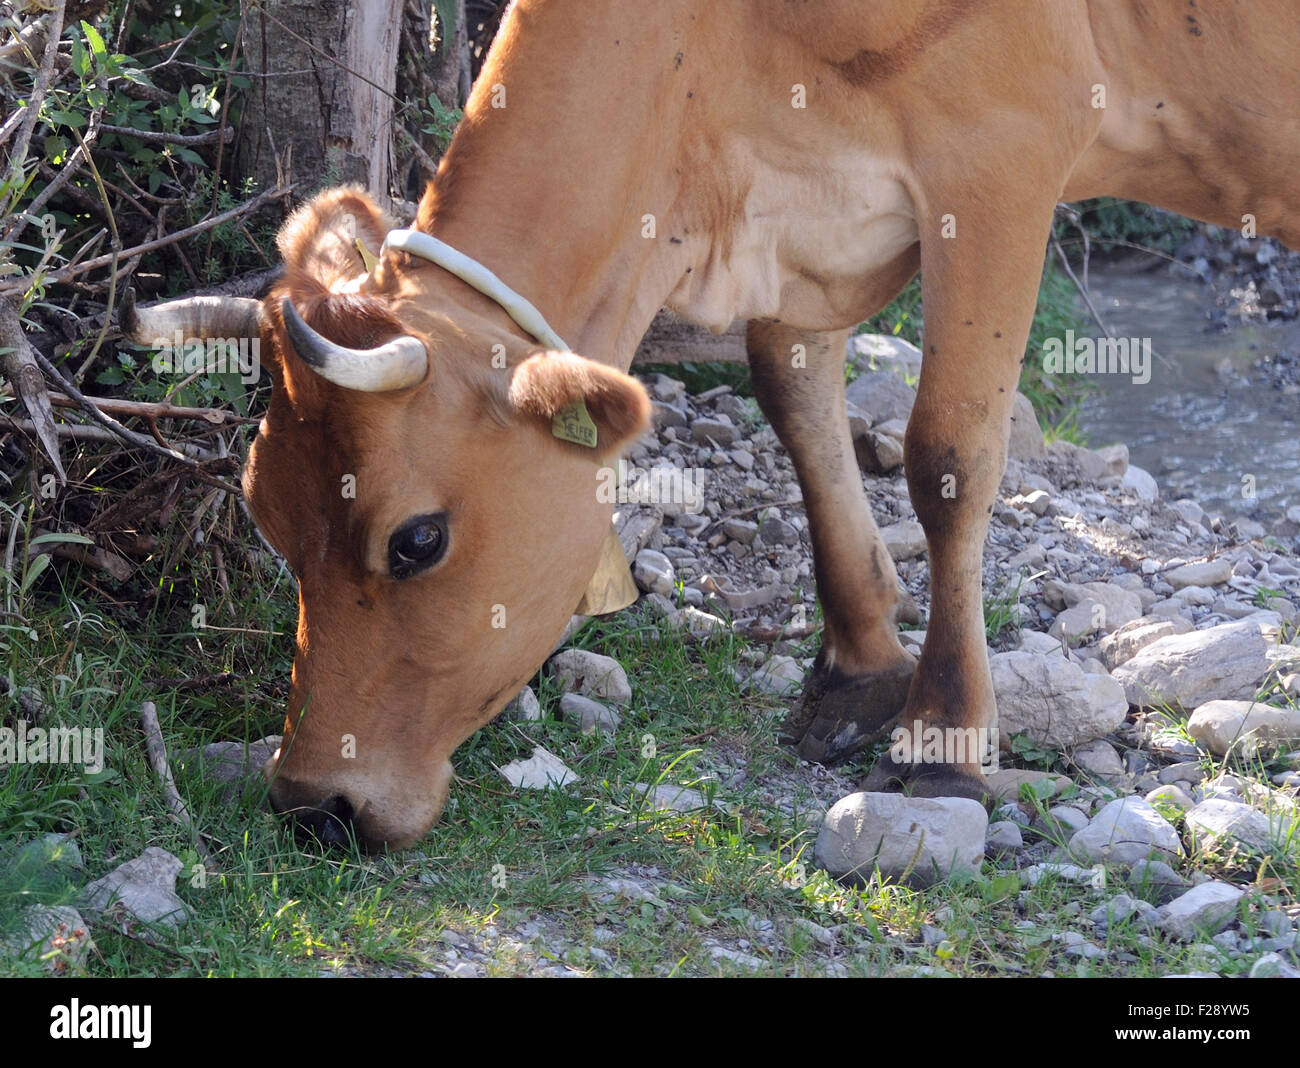 Eine Kuh mit einer Glocke um den Hals weidet spärliche Gras in einem Bergtal. Theth, Thethi, Albanien. Stockfoto